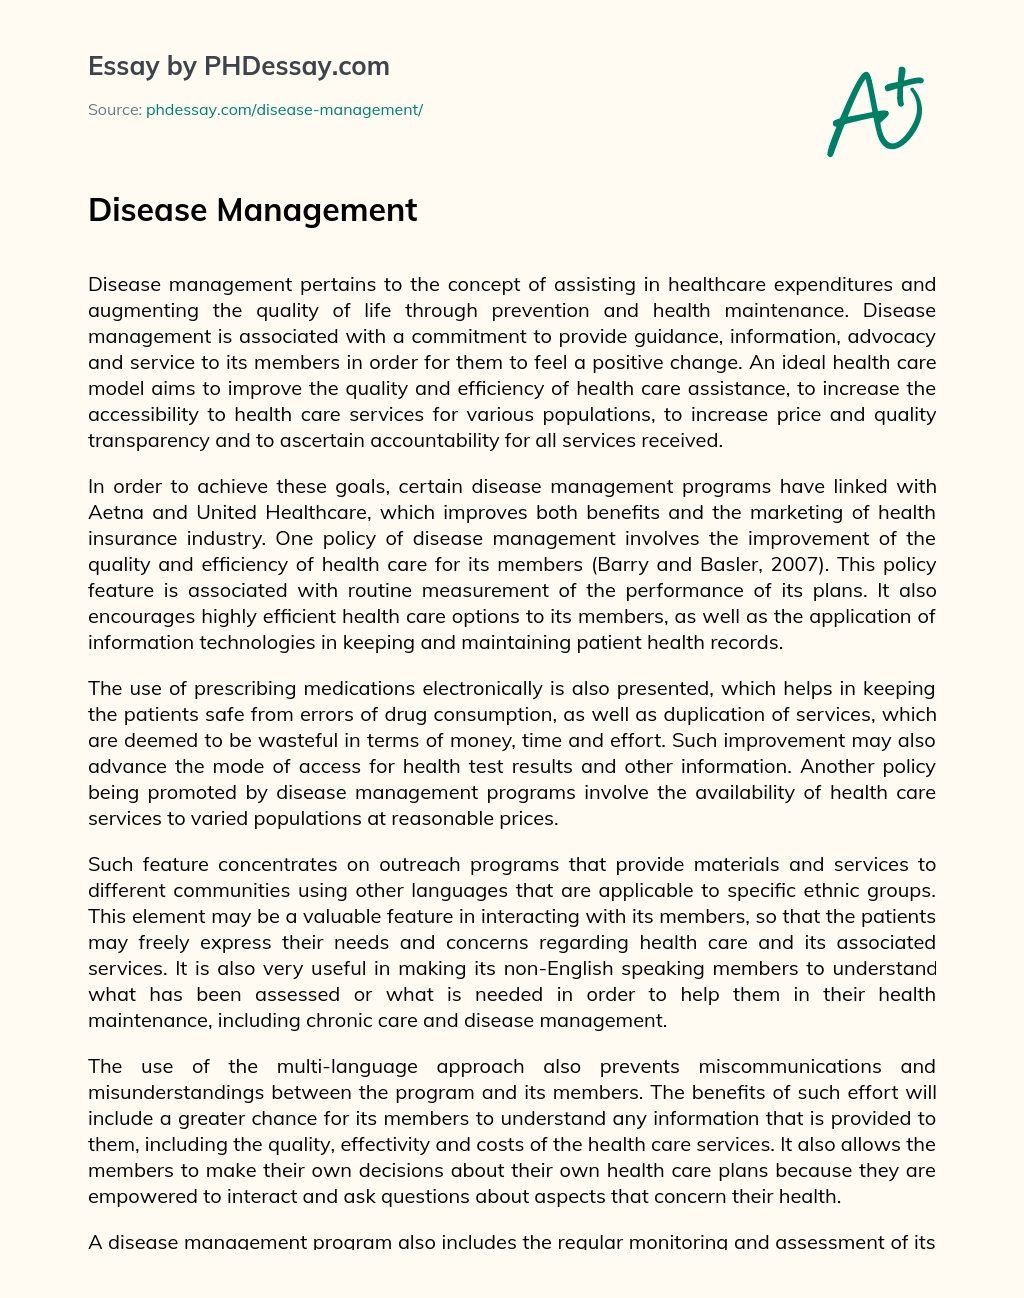 Disease Management essay